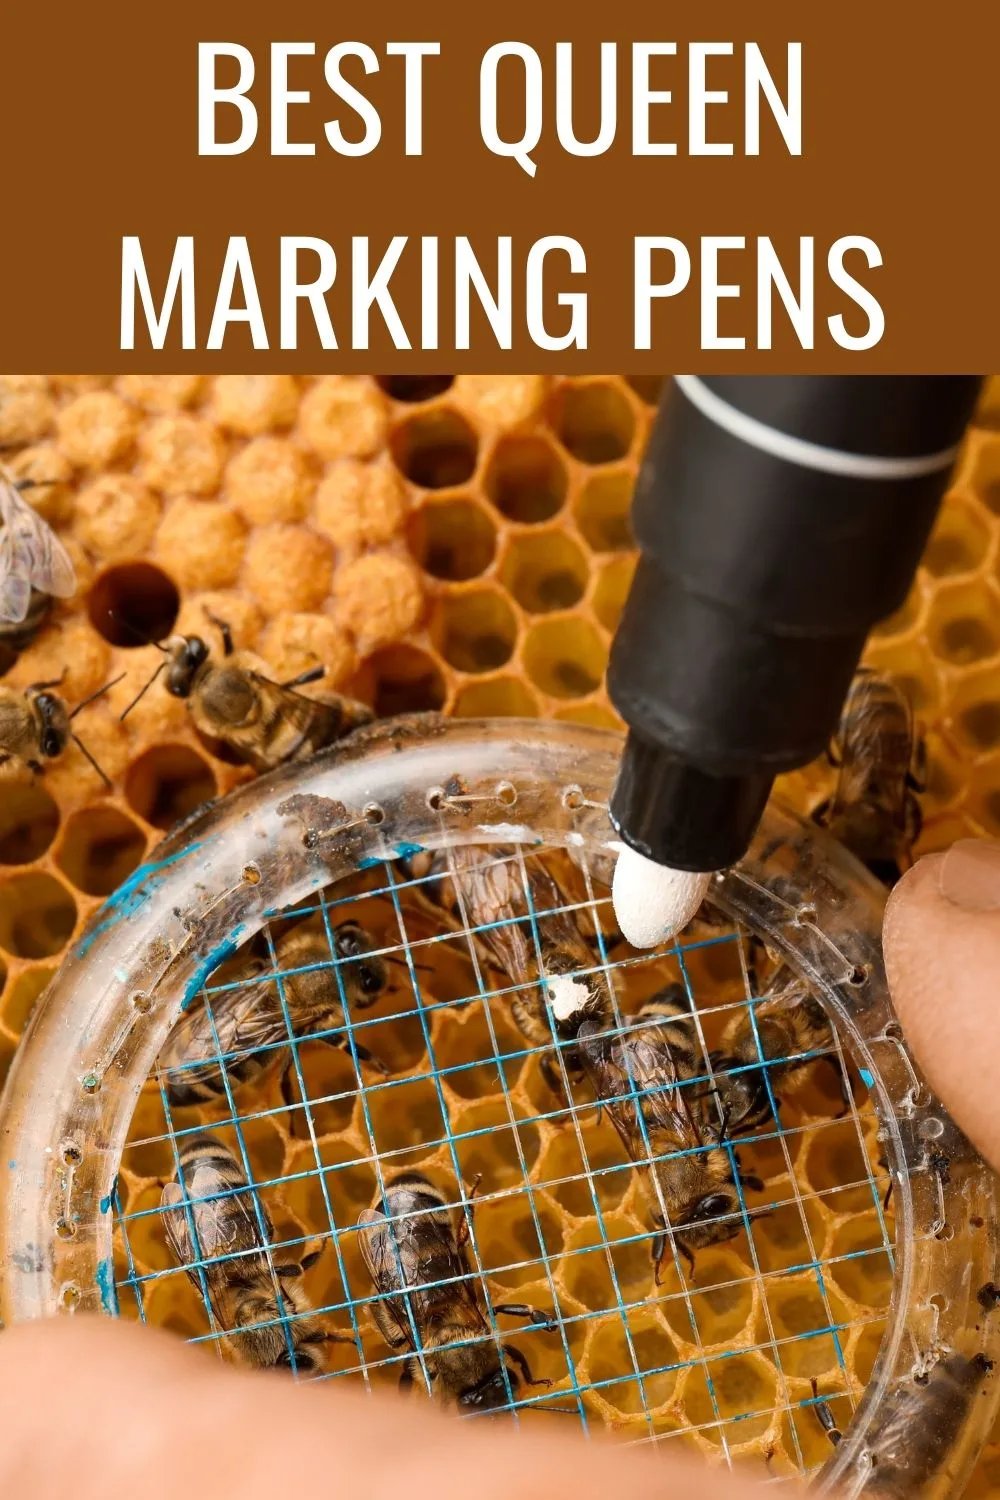 Best queen marking pens